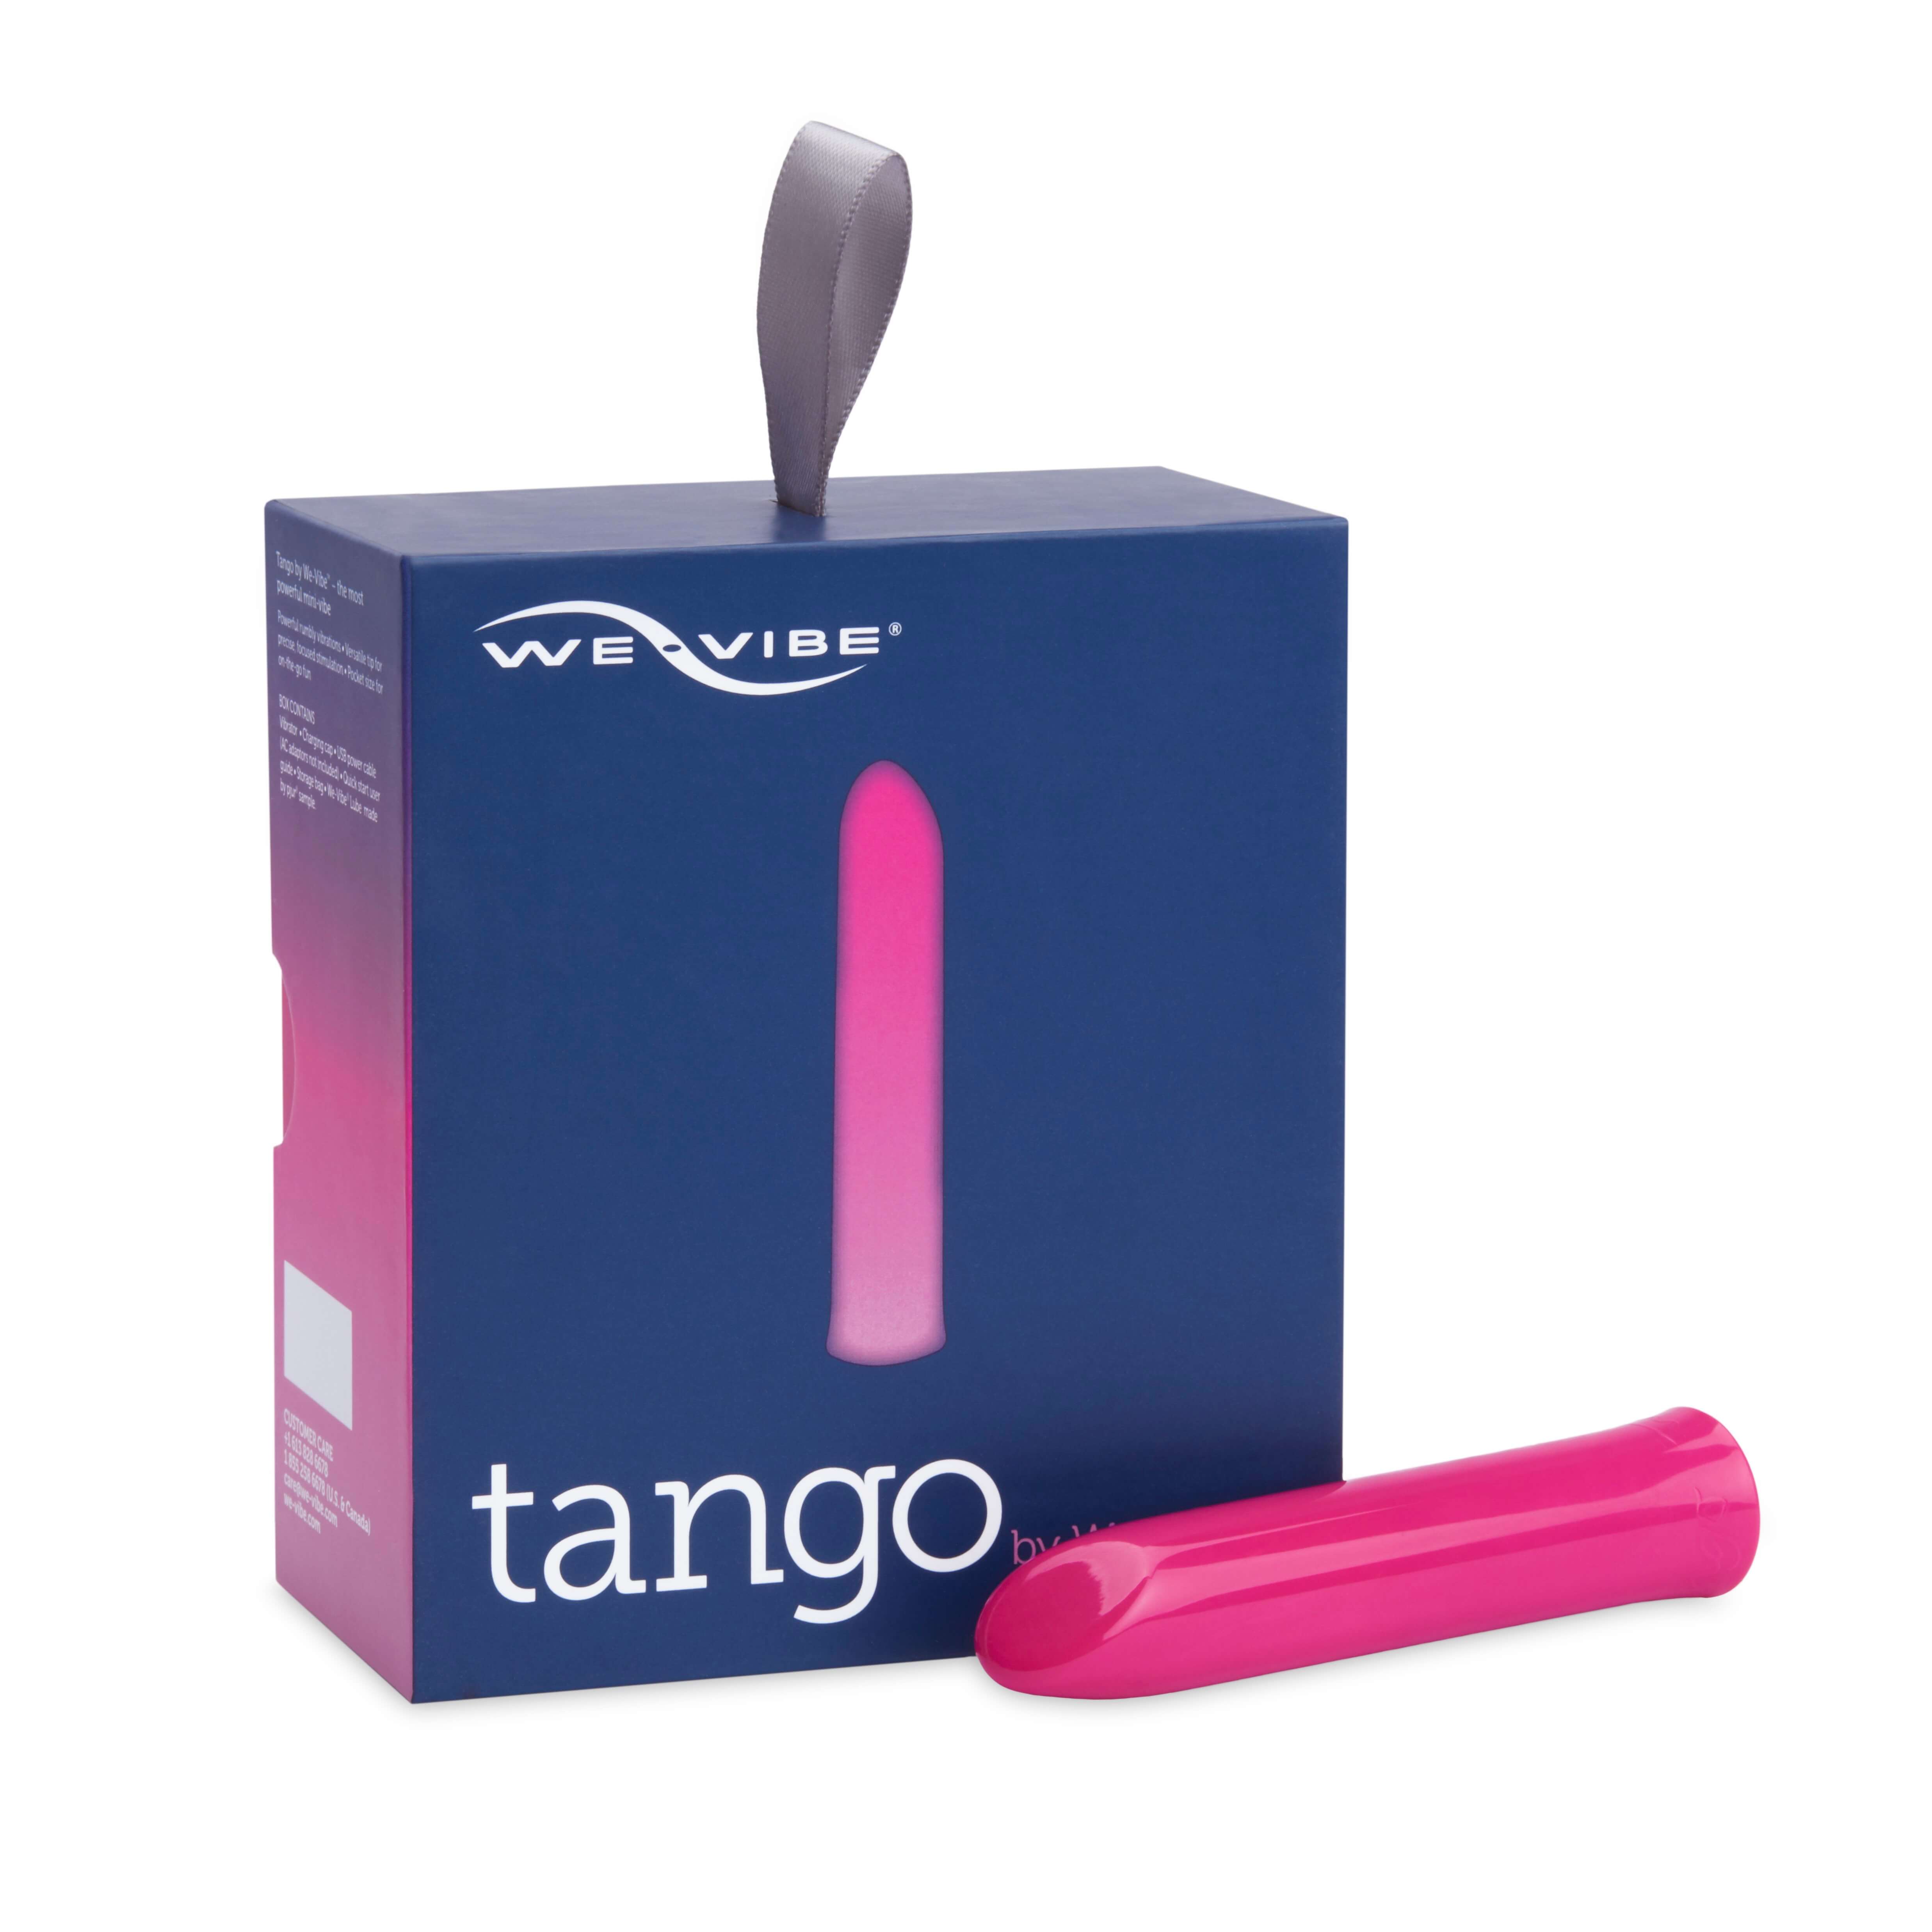 We-Vibe Tango vibrator